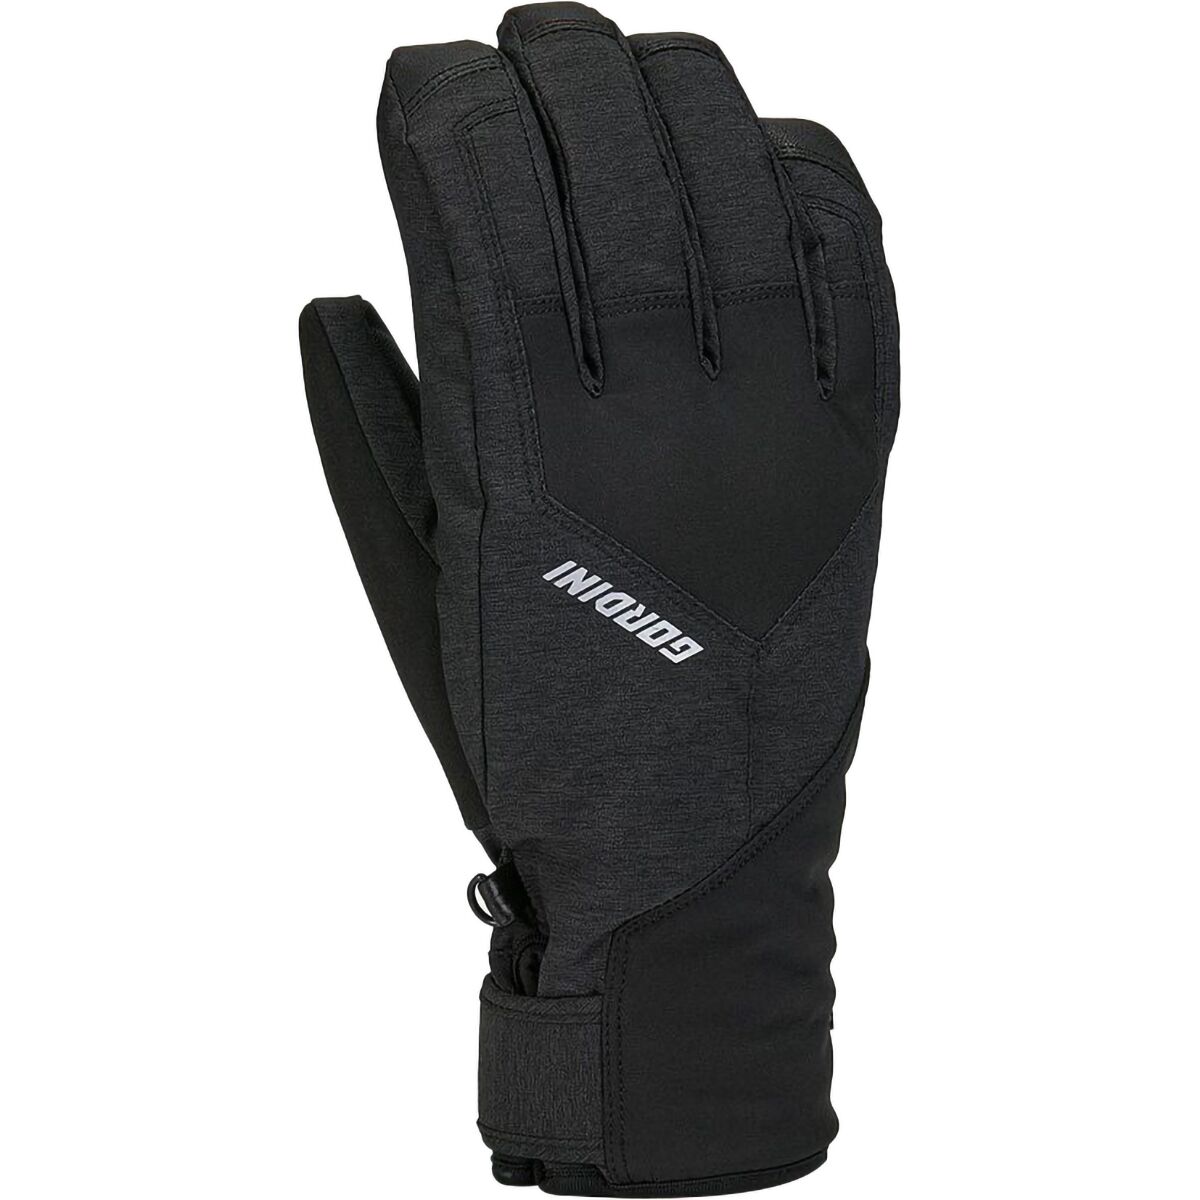 Gordini Aquabloc Glove - Men's